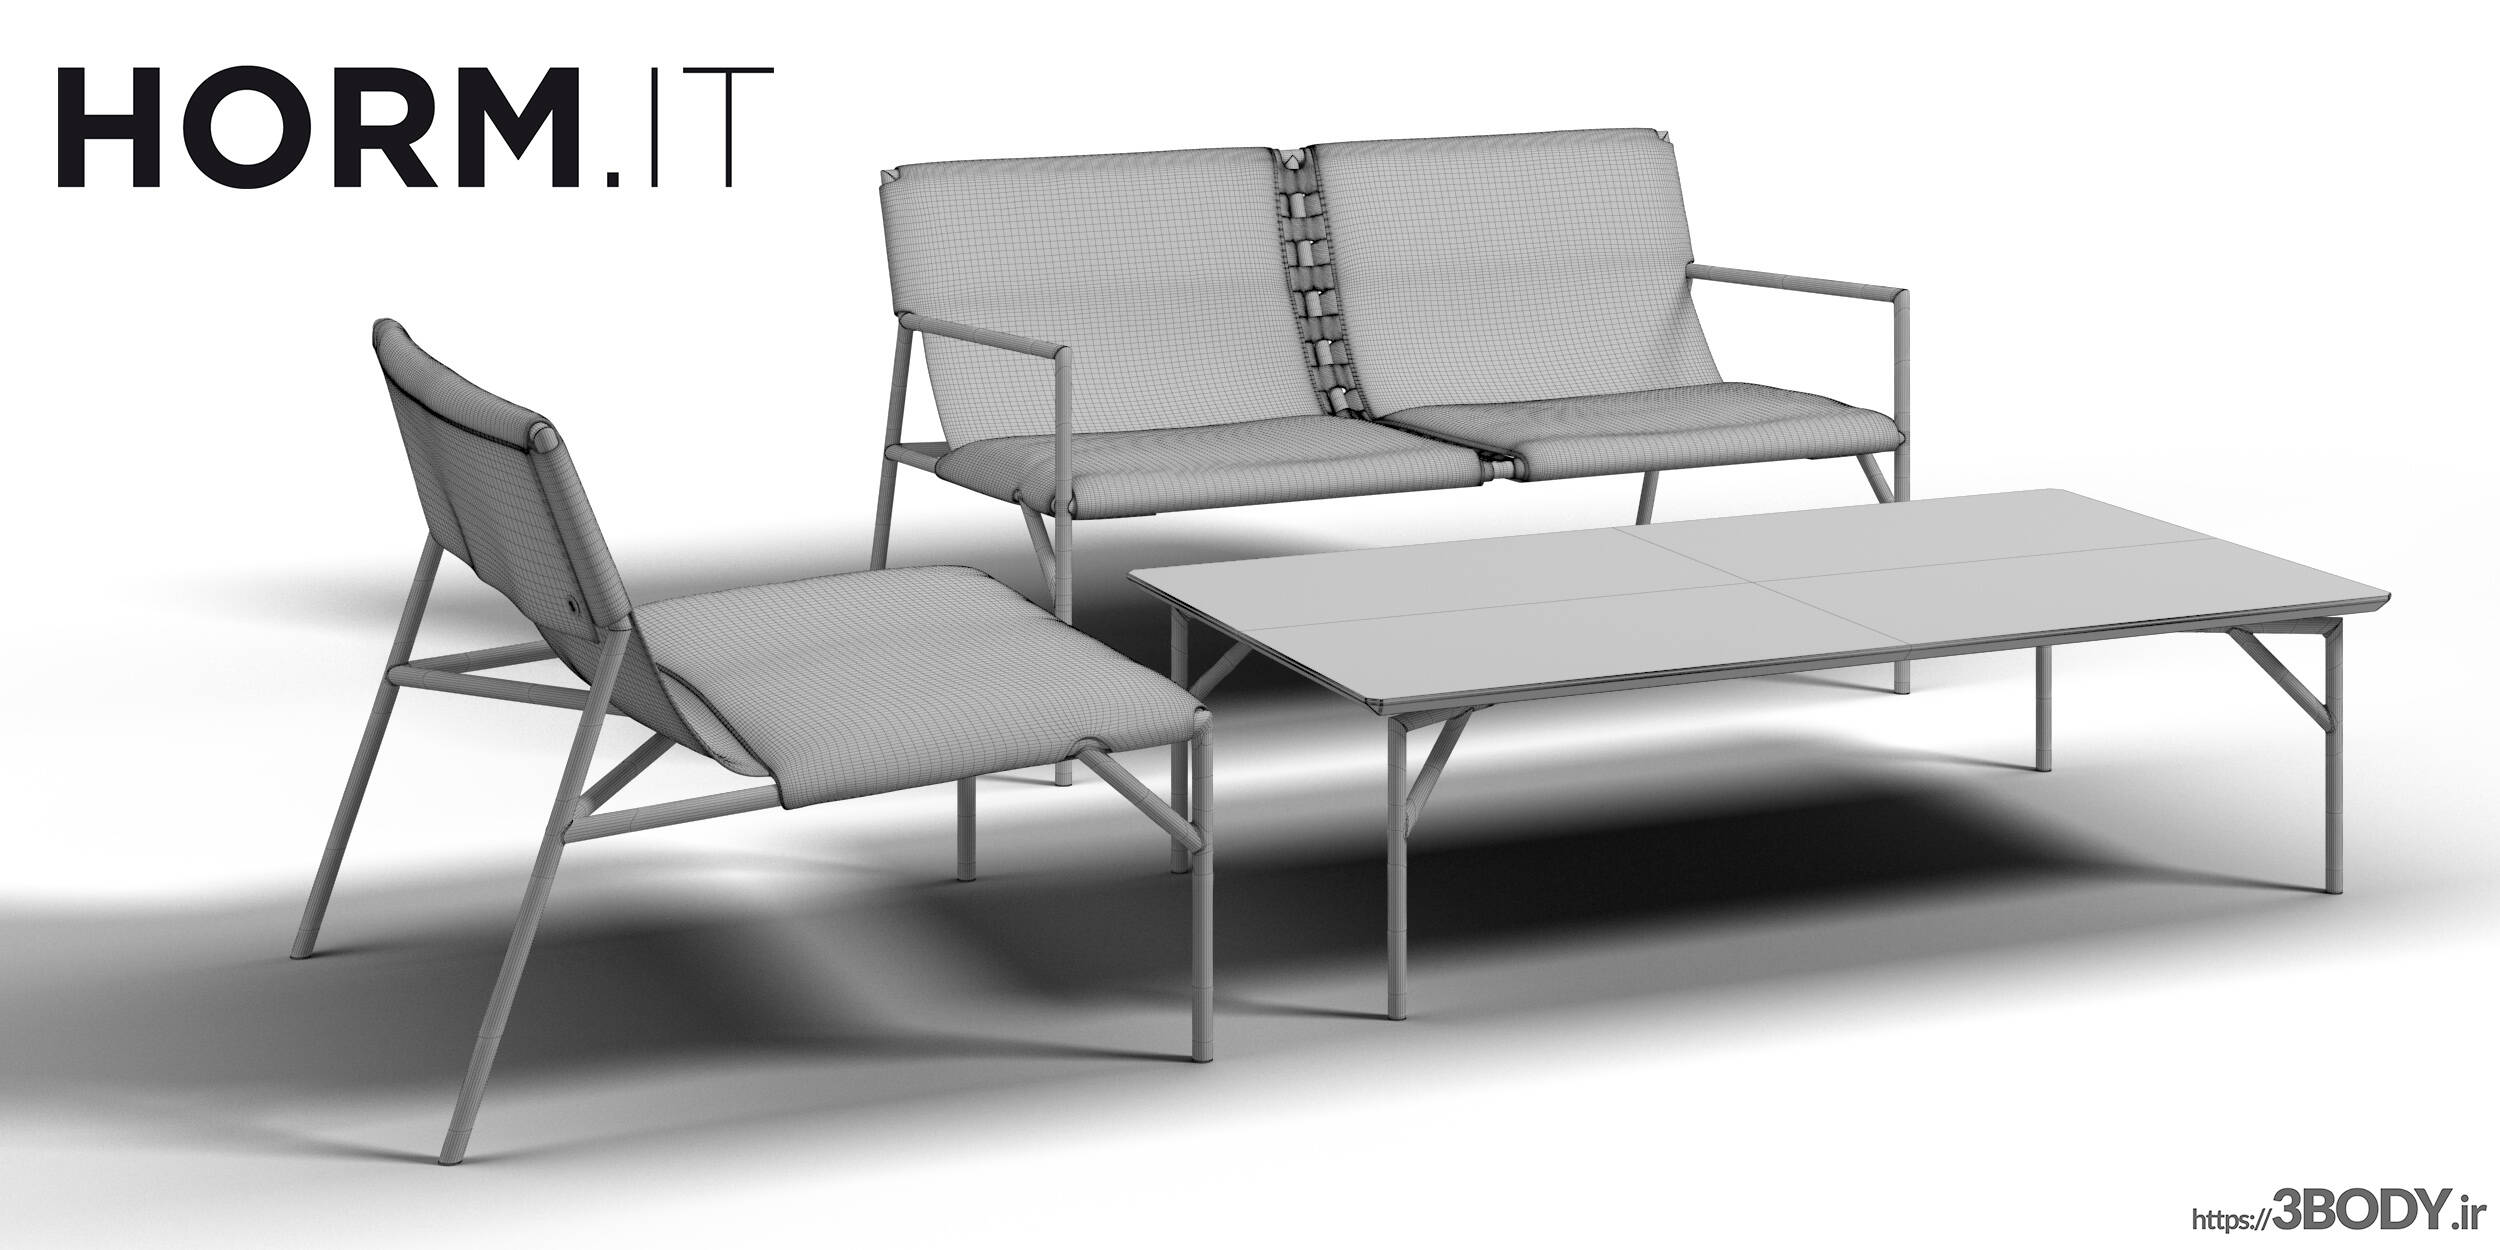 مدل سه بعدی  ست میز و صندلی عکس 2